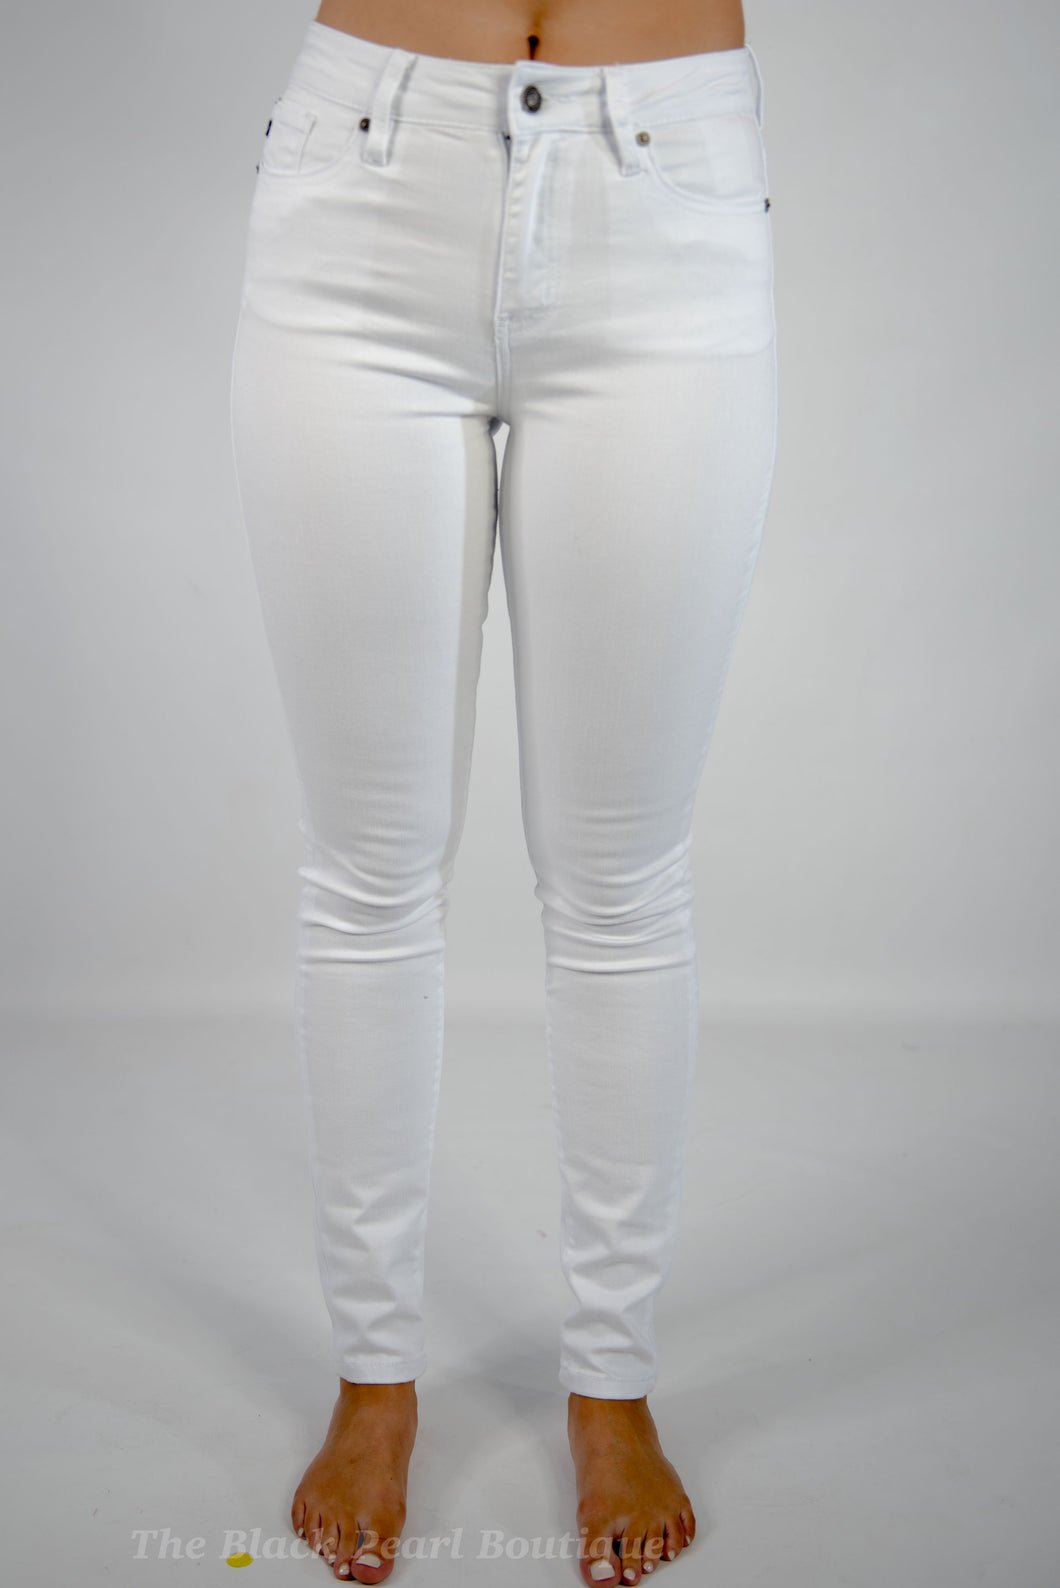 KanCan White High Rise Super Skinny Jeans